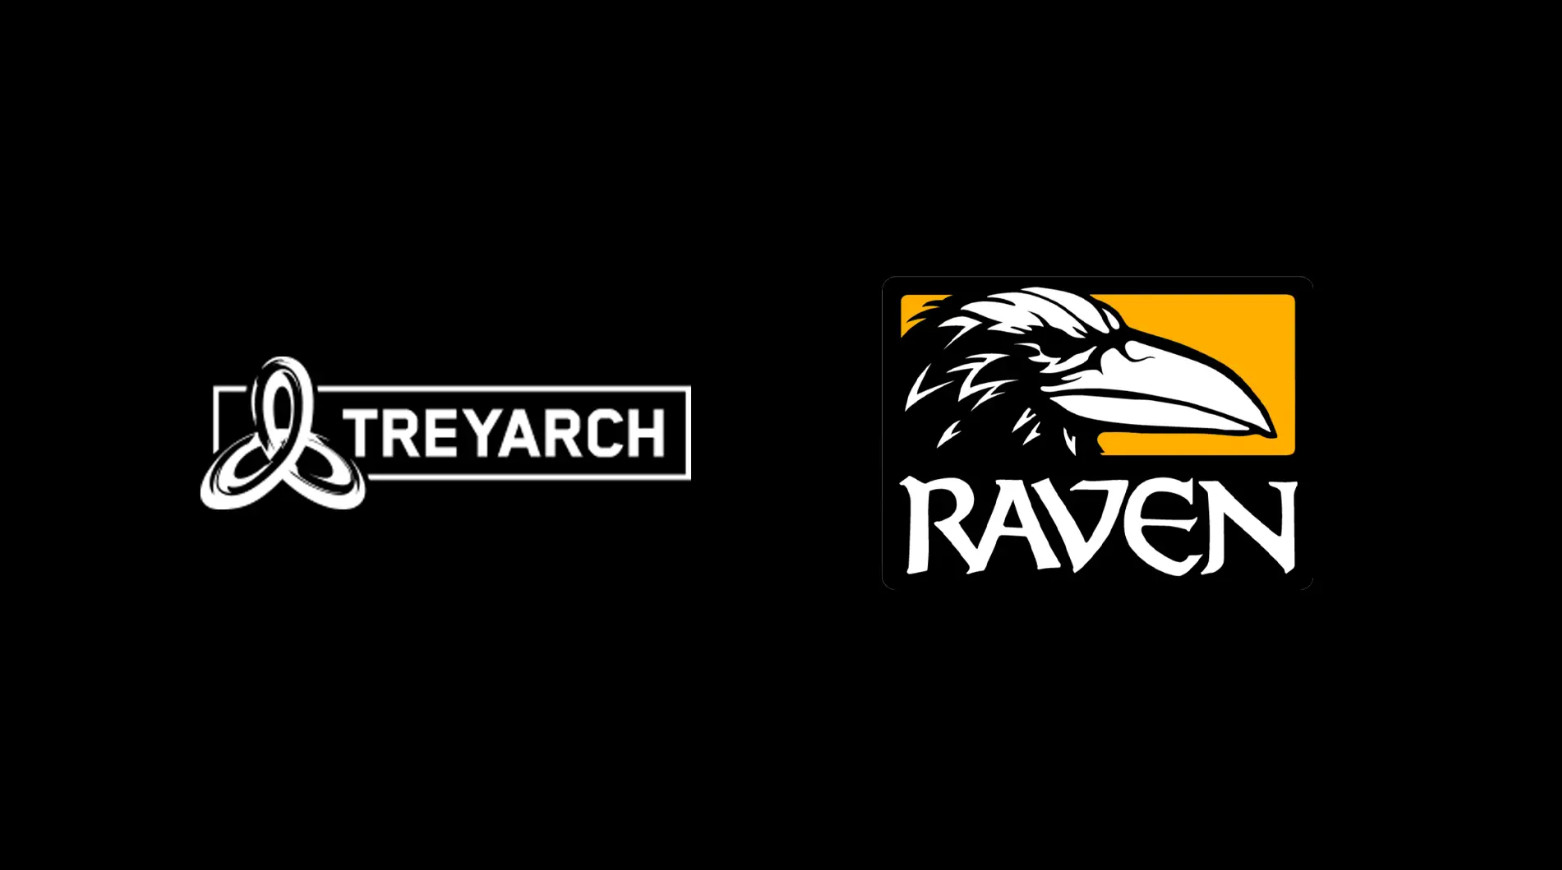 《使命召唤17》由T组和Raven联合开发 将很快正式公布